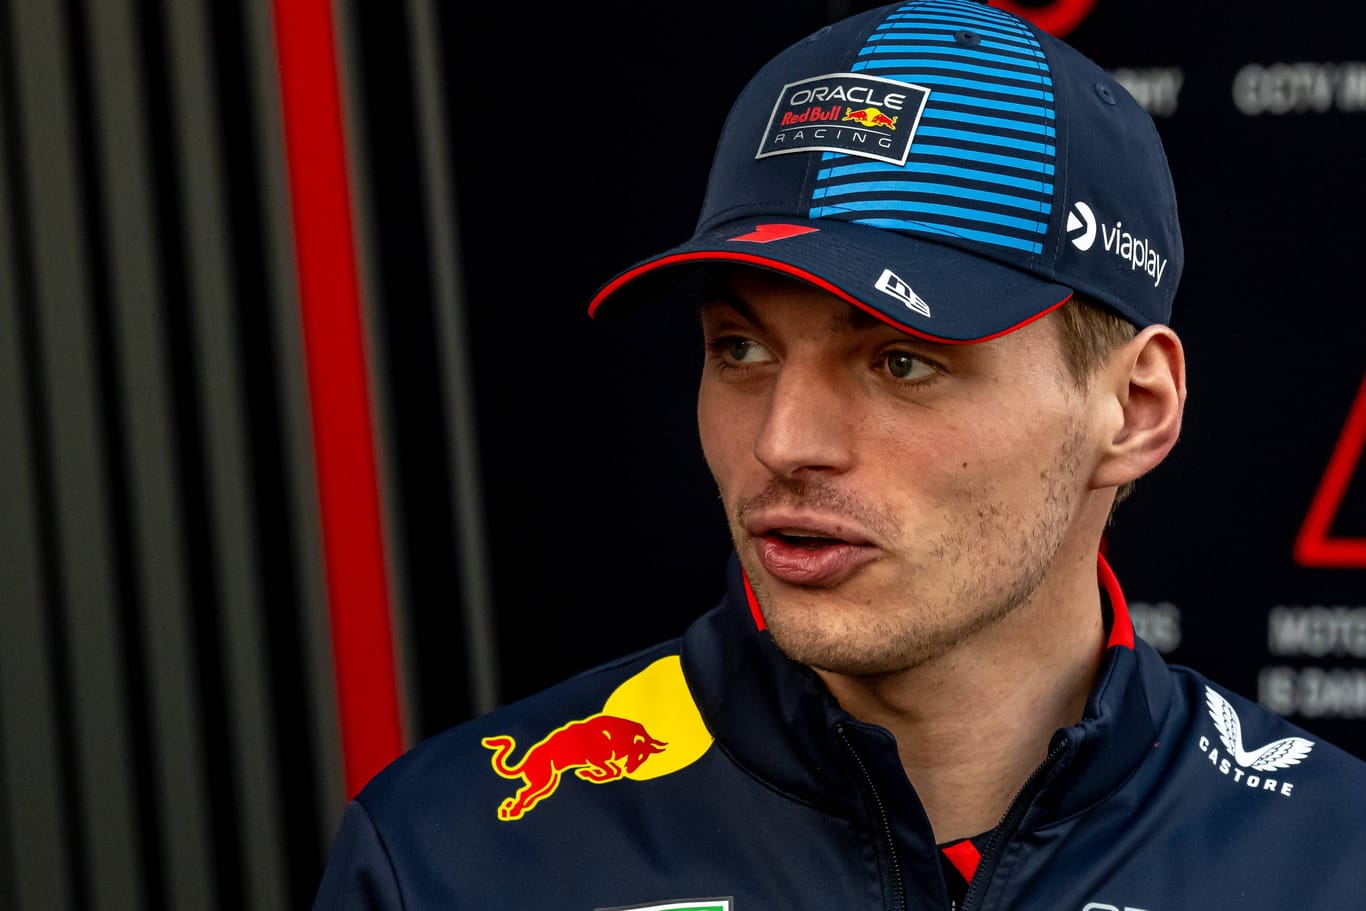 Max Verstappen am Rande des Rennens in Bahrain: Wie blickt der Weltmeister auf die Vorgänge bei Red Bull?